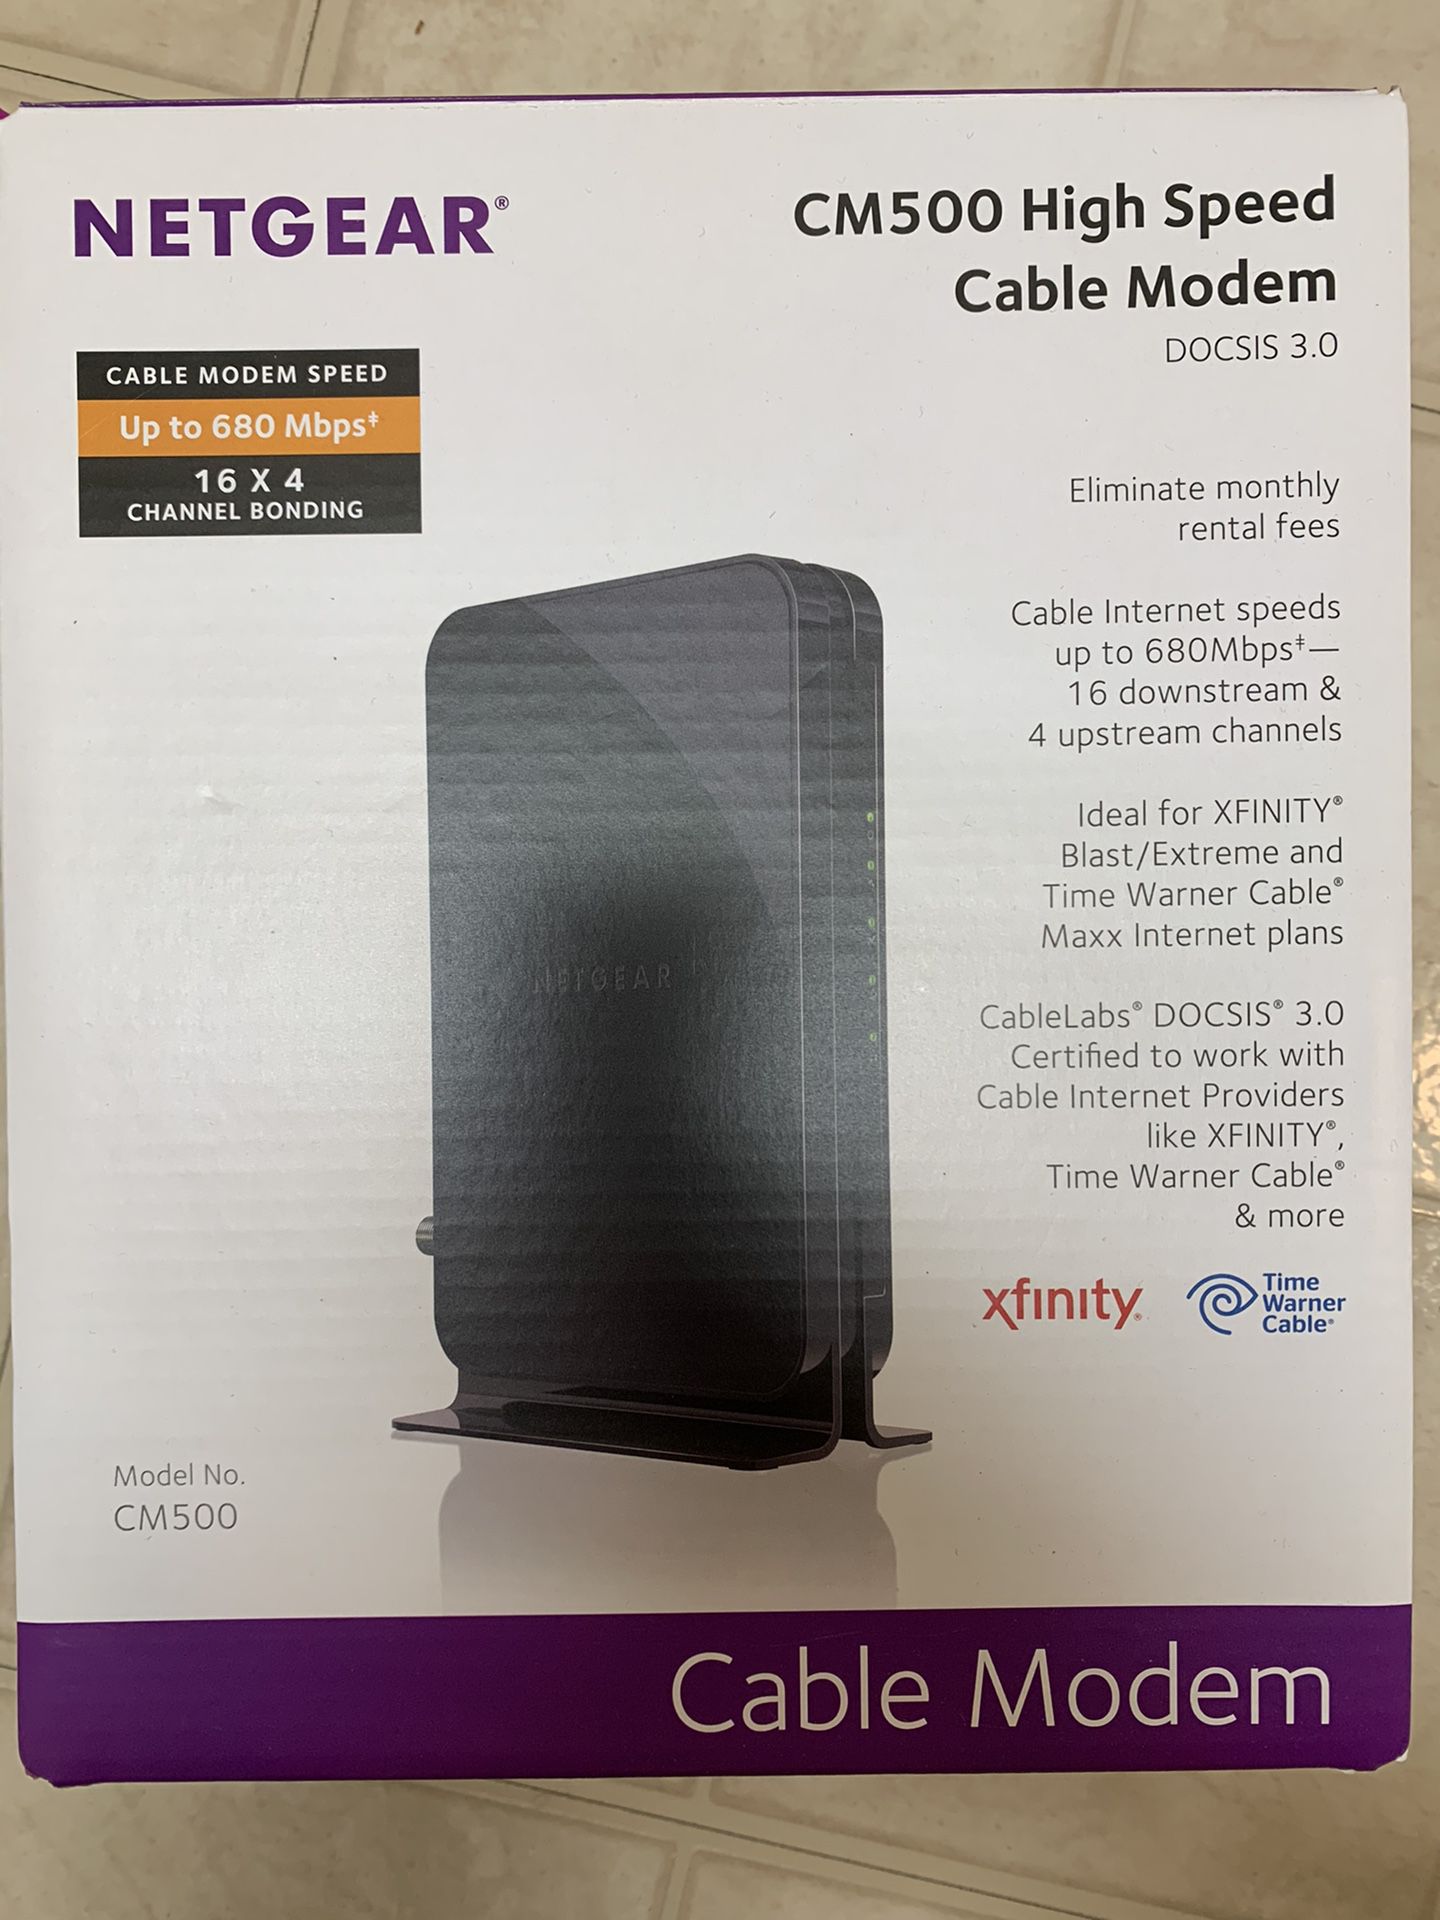 Cable modem